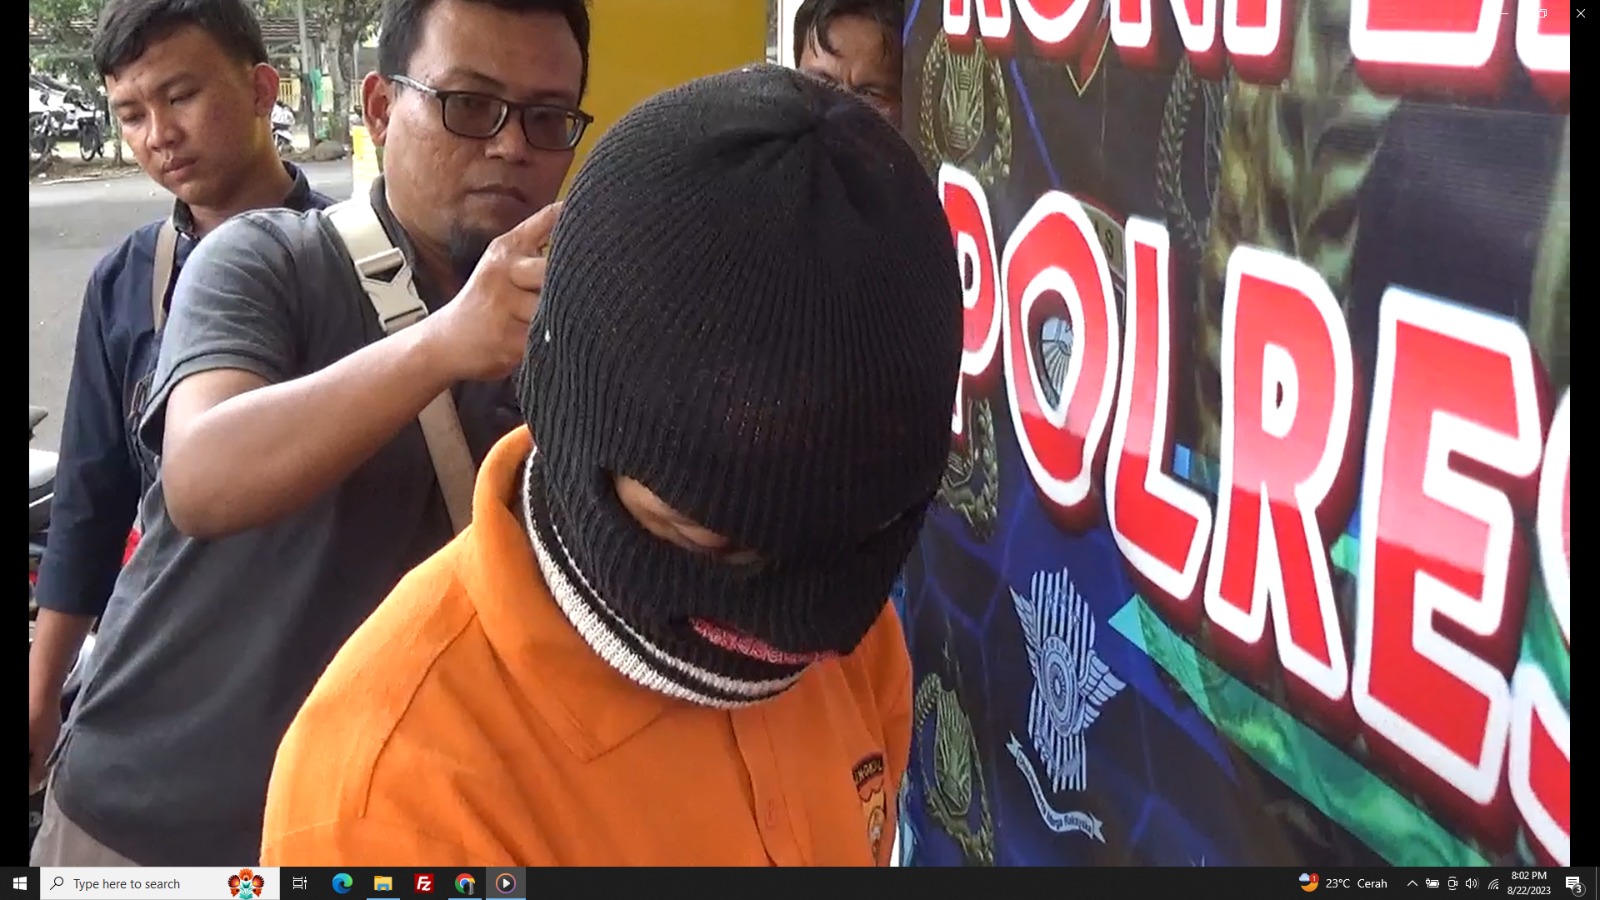 Beli 1.000 Butir Hexymer Via Online, Warga Lebong Terancam 12 Tahun Penjara